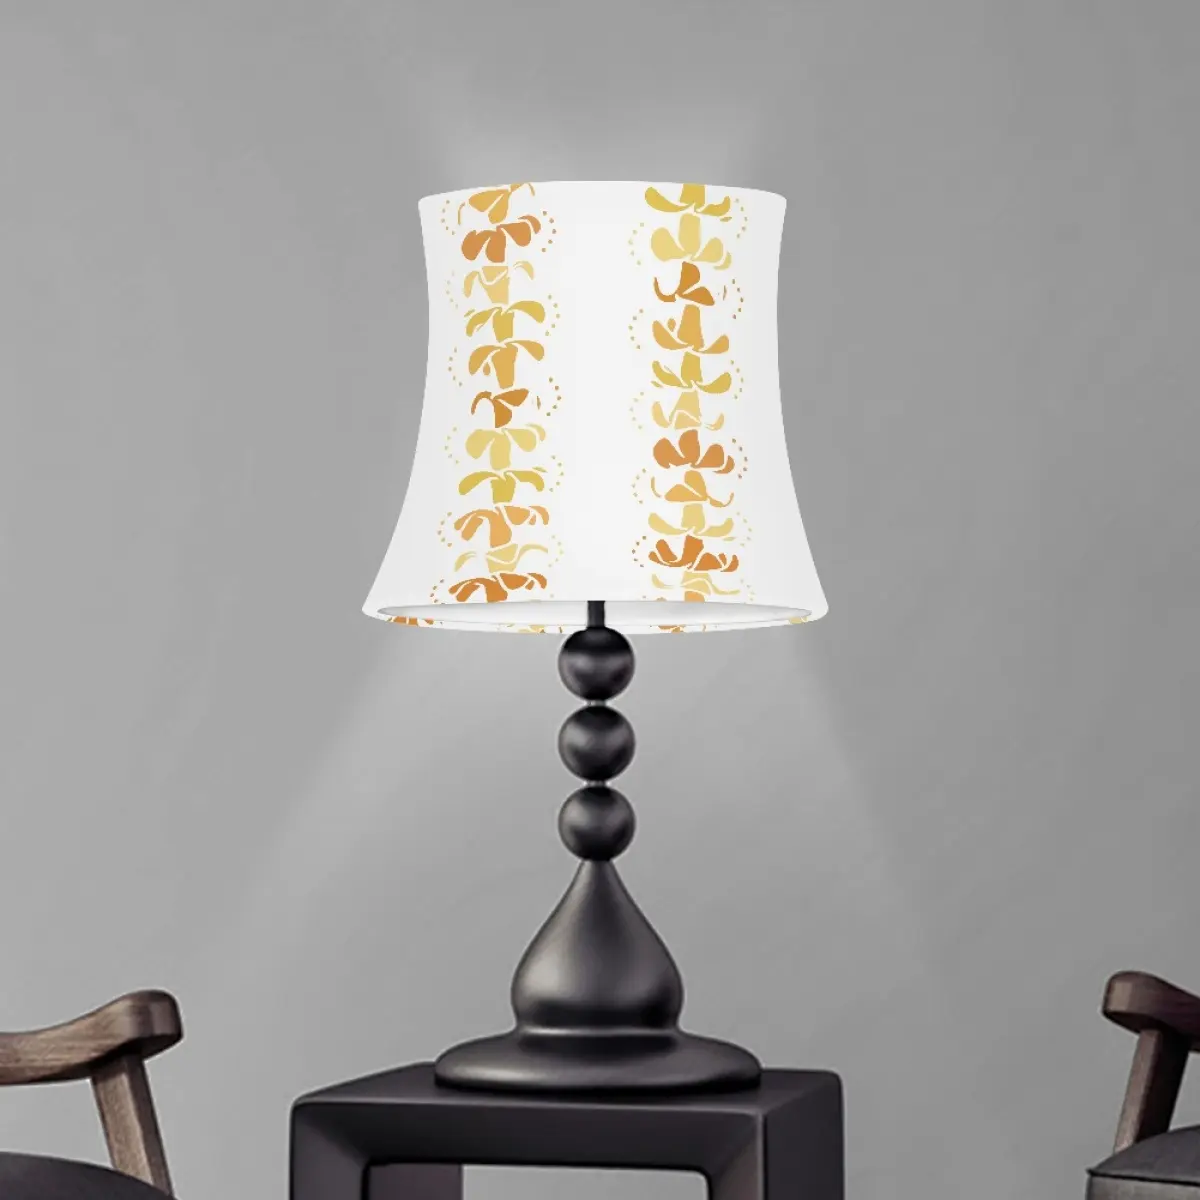 Hawaii Style Puakenikeni Lei Print Lampen schirm Zylindrische drei dimensionale minimalist ische und modische Lampen schirm Home Decor